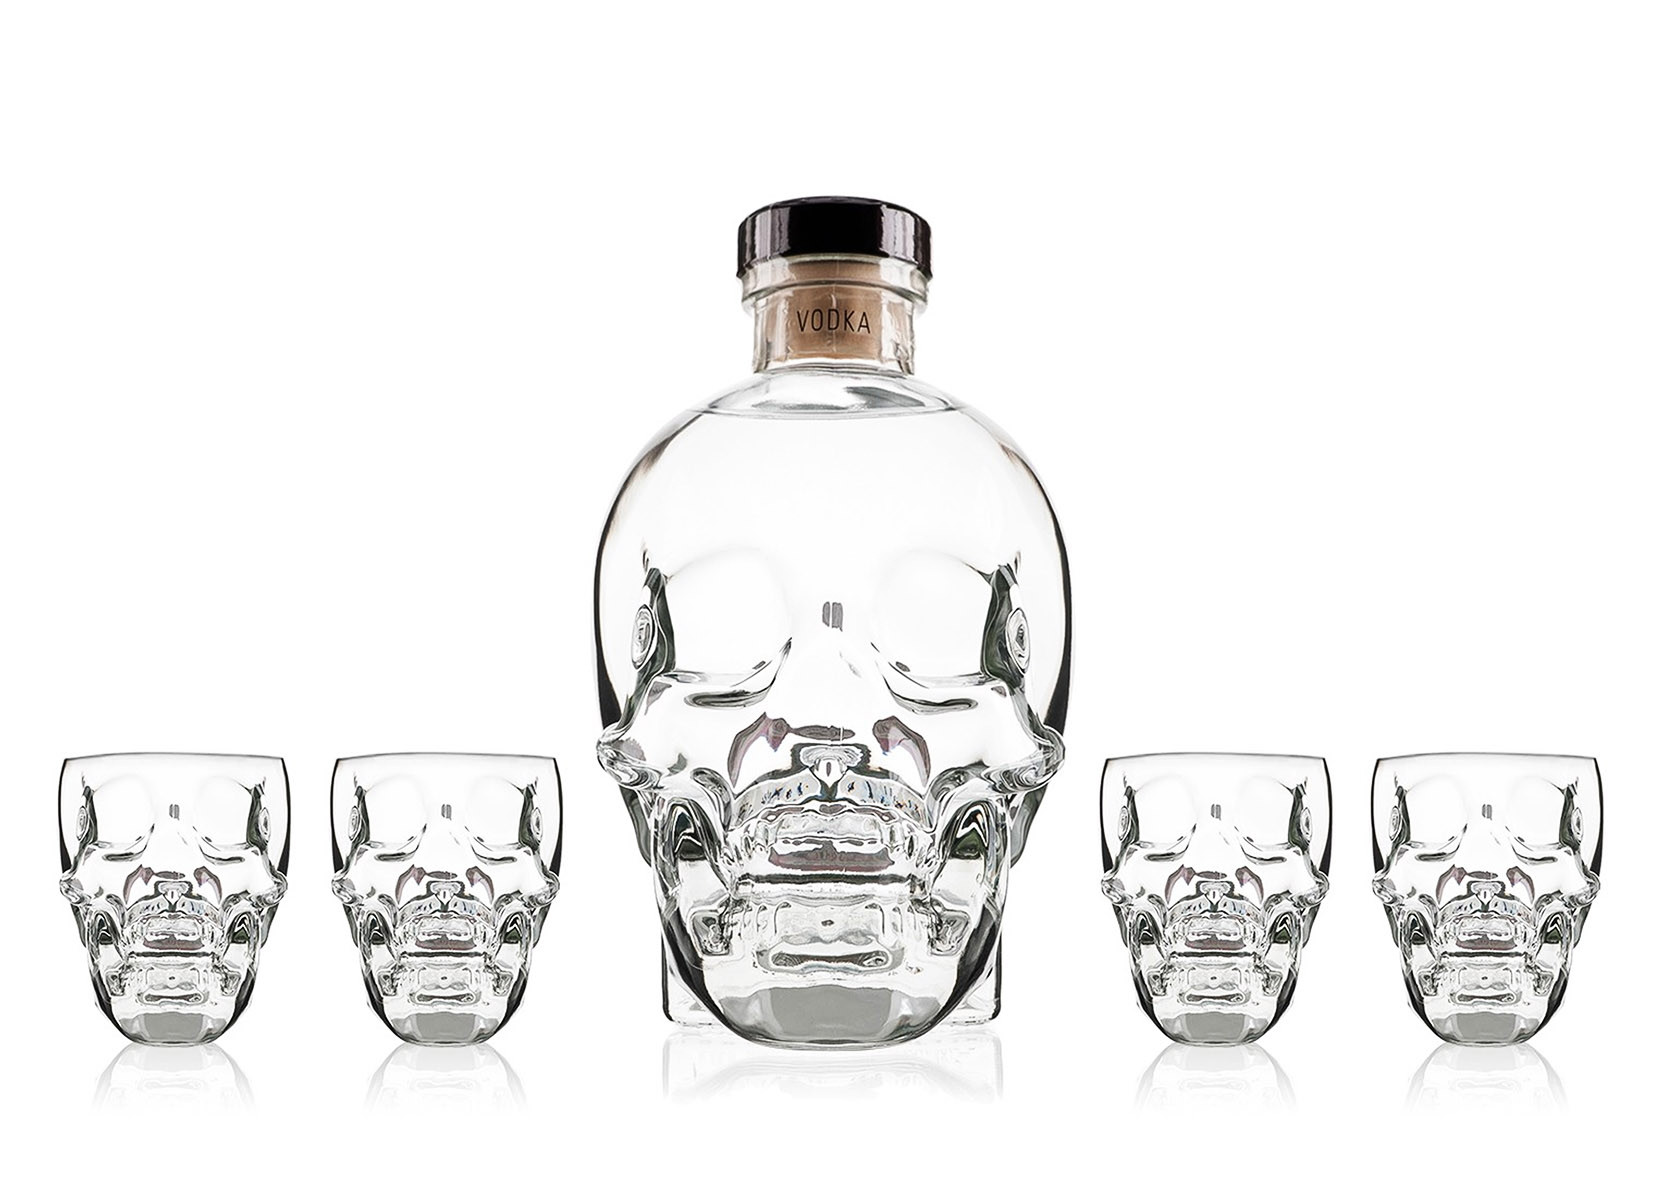 Achat de Vodka Crystal Head 70cl vendu en Coffret 4 Verres sur notre site -  Odyssee-vins